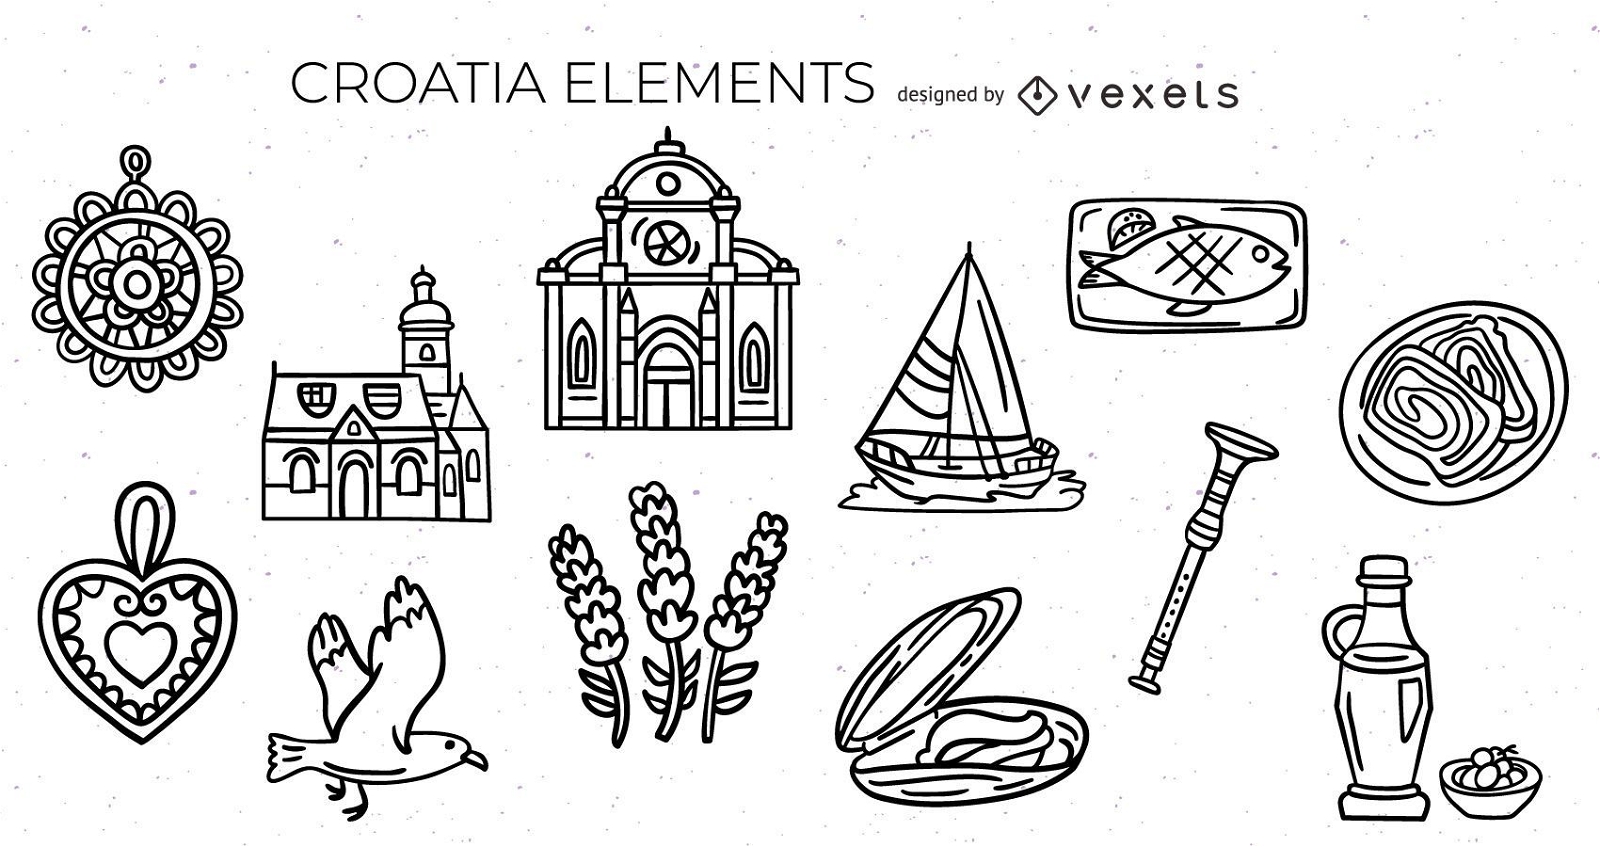 Croatian elements stroke set